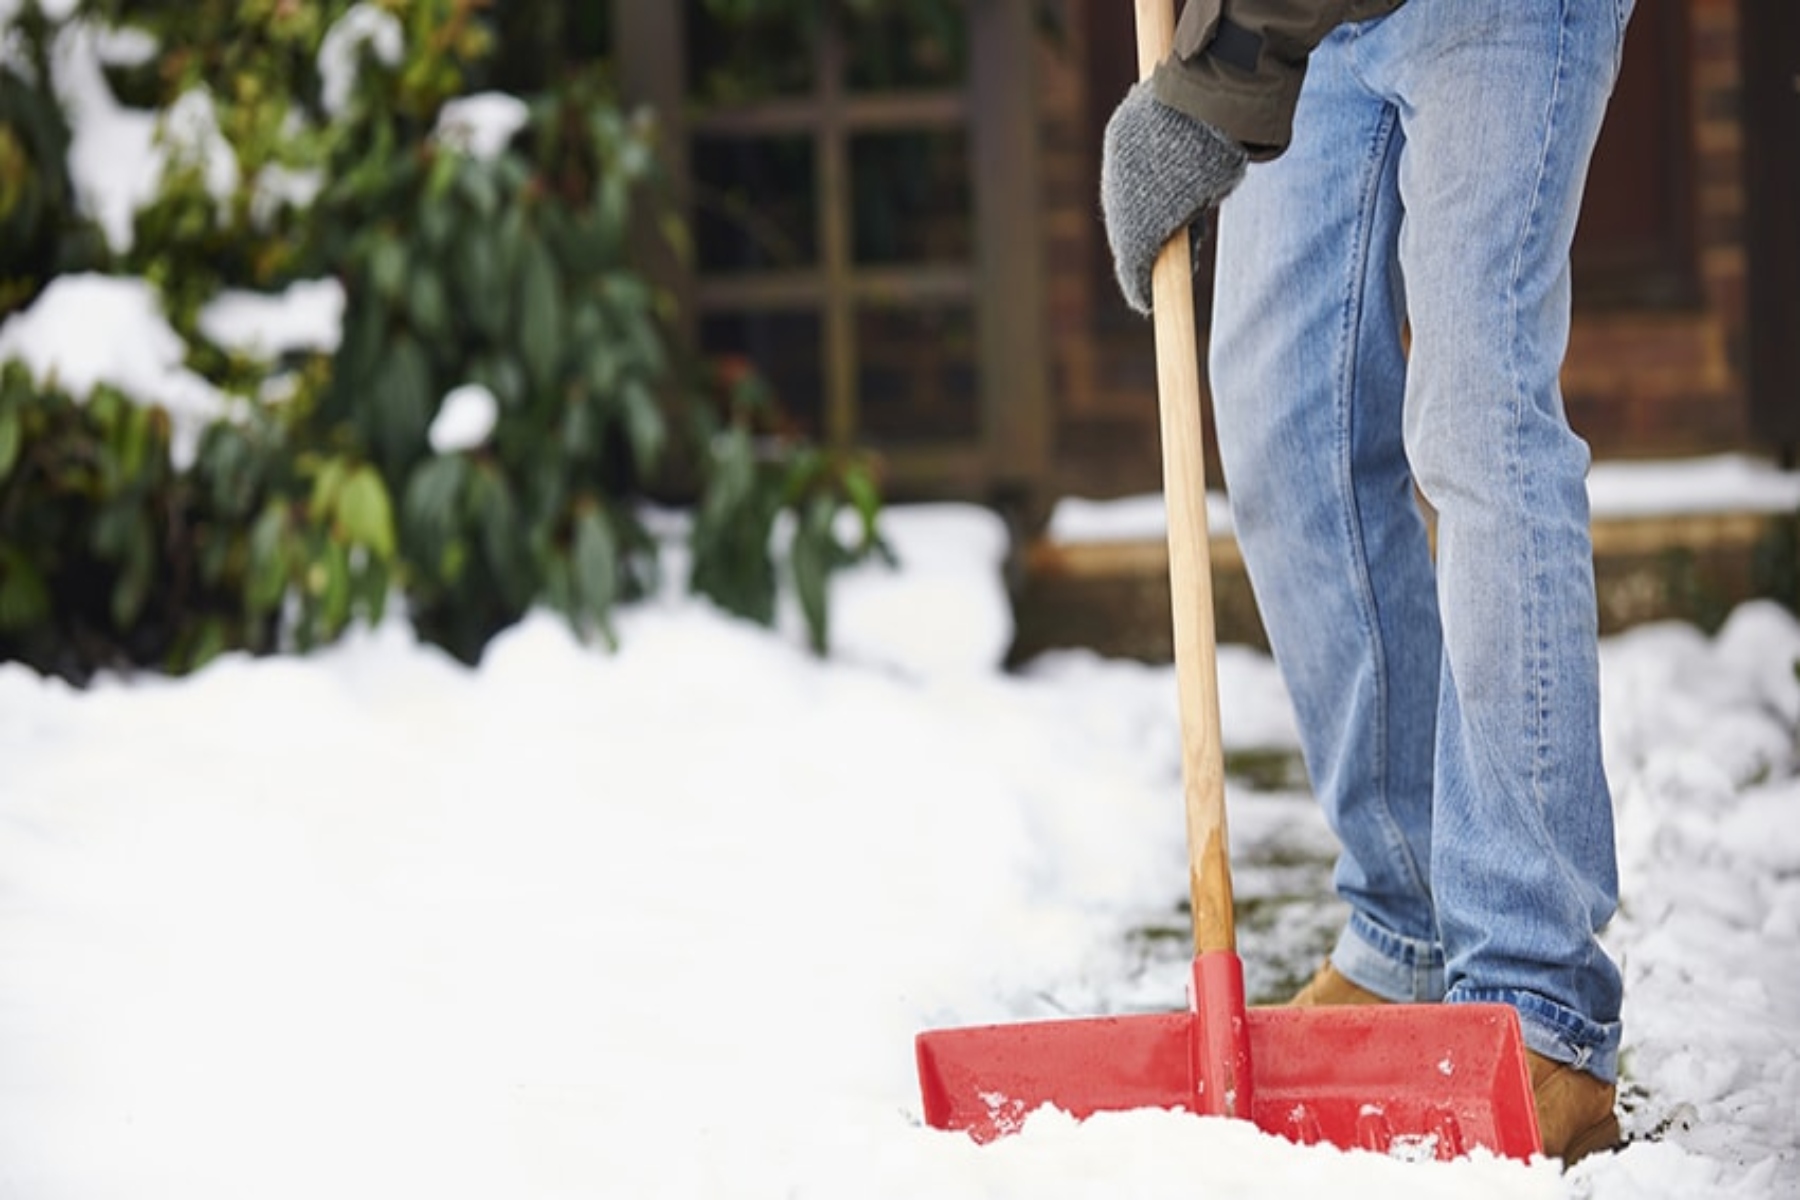 Φτυάρισμα χιονιού υγεία: Κίνδυνος για καρδιακή προσβολή από τη χαμηλή θερμοκρασία και την άσκηση